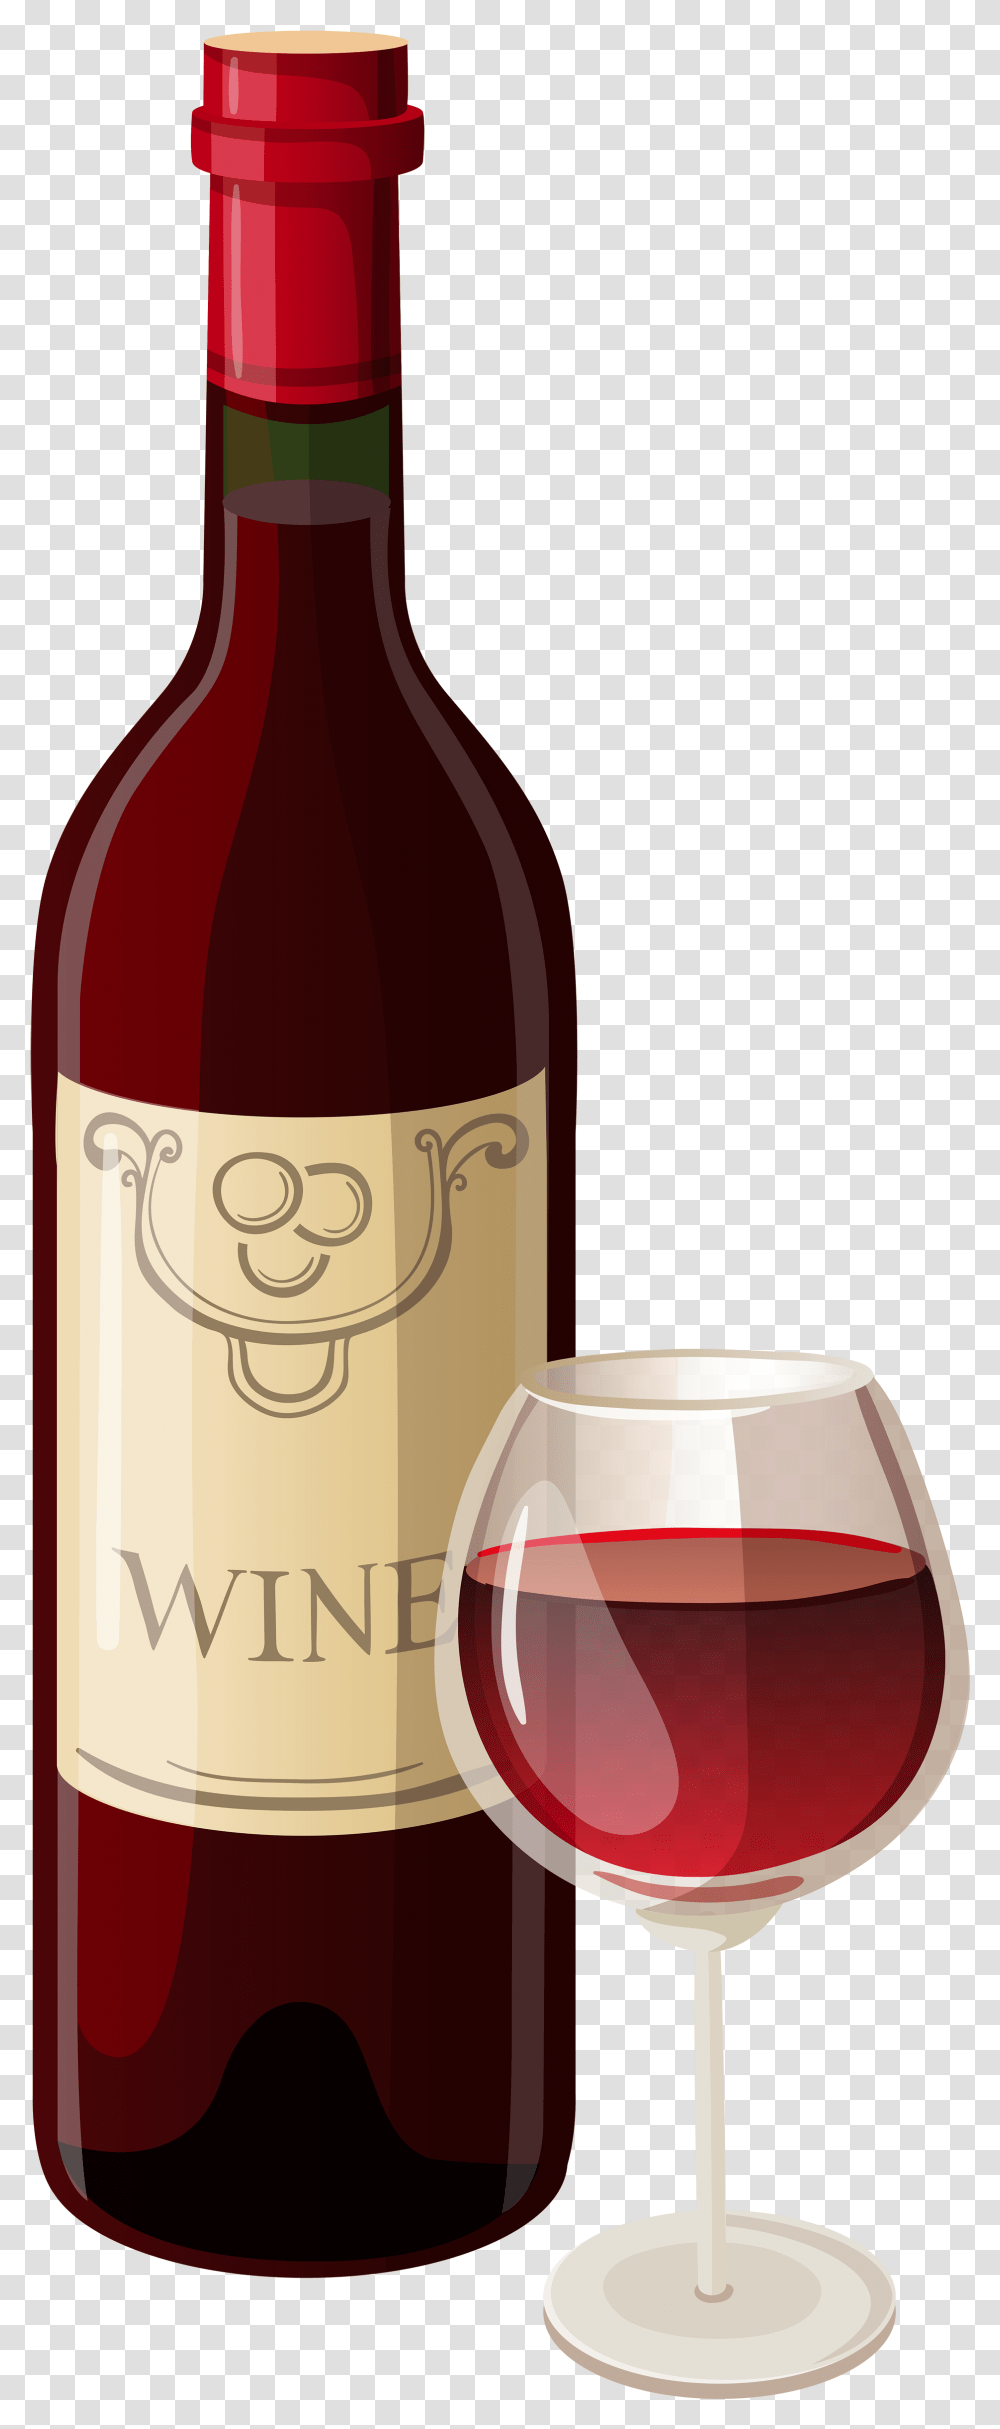 Wine Bottle Clipart Background Wine Bottle Clip Art, Alcohol, Beverage, Drink, Red Wine Transparent Png